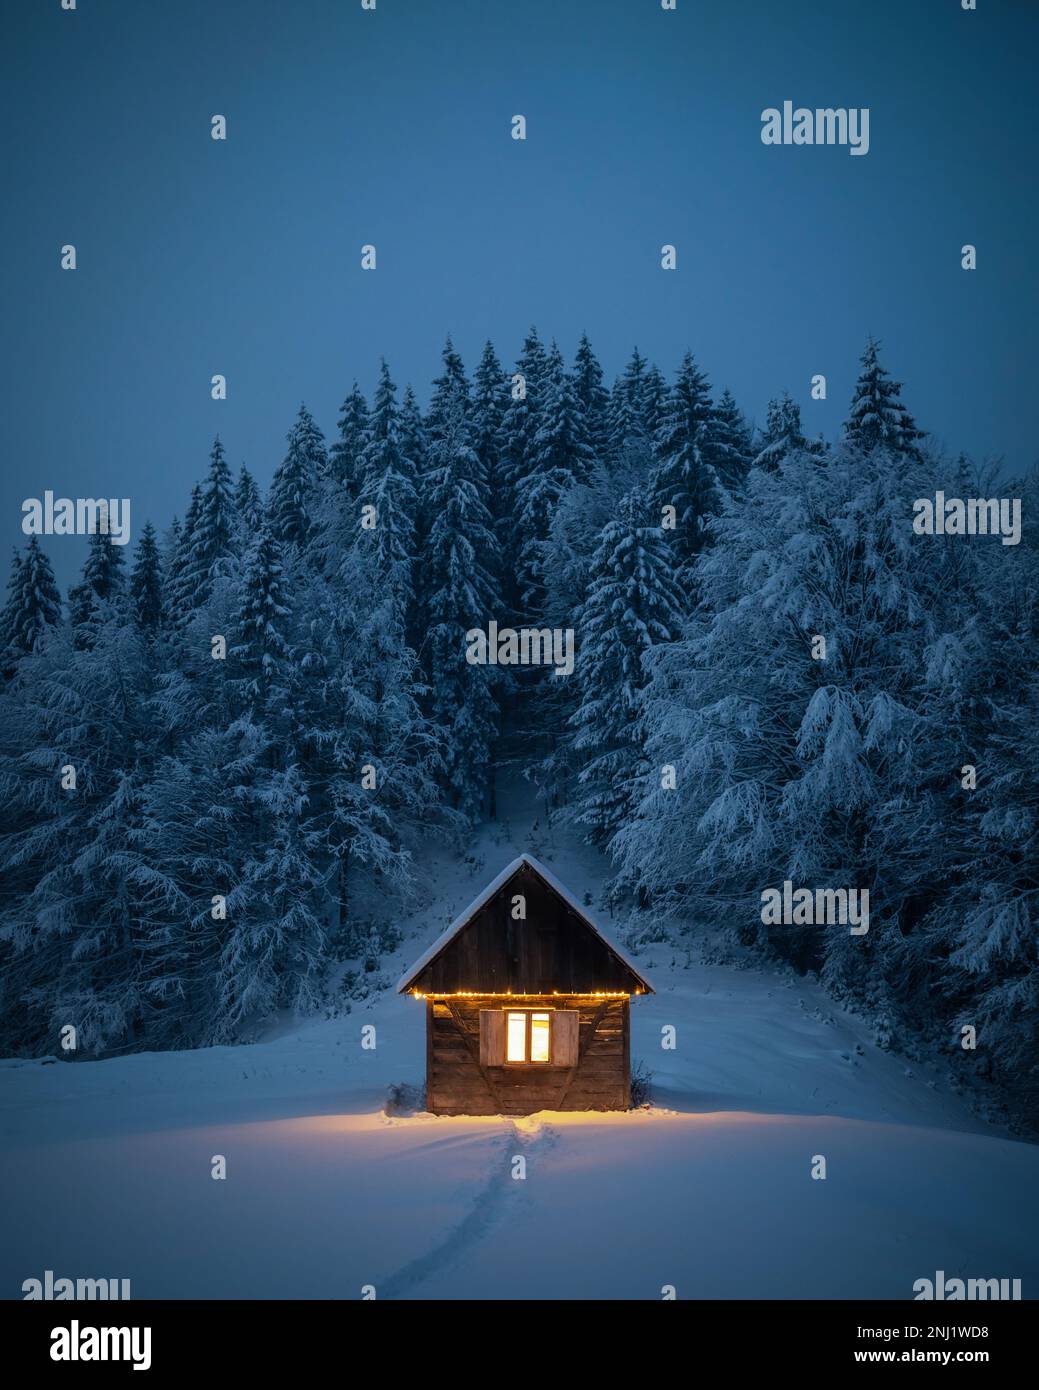 Fantastische Winterlandschaft mit glühender Holzhütte im verschneiten Wald. Gemütliches Haus in den Karpaten. Weihnachtsfeiertagskonzept Stockfoto